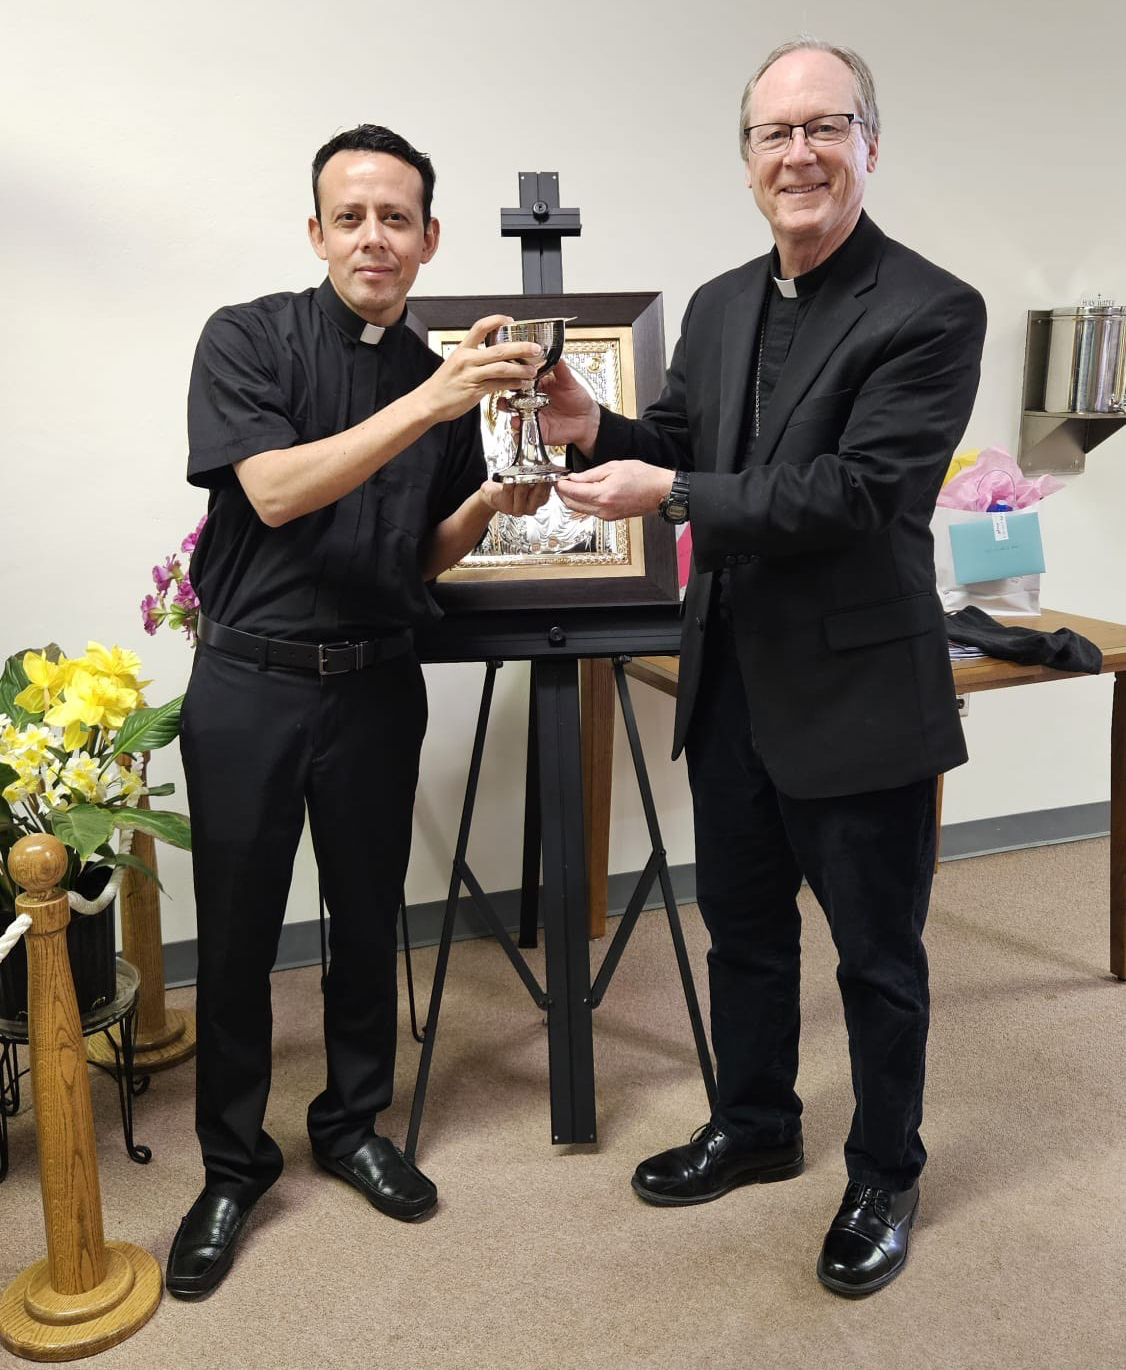 fr. jose and bishop walsh